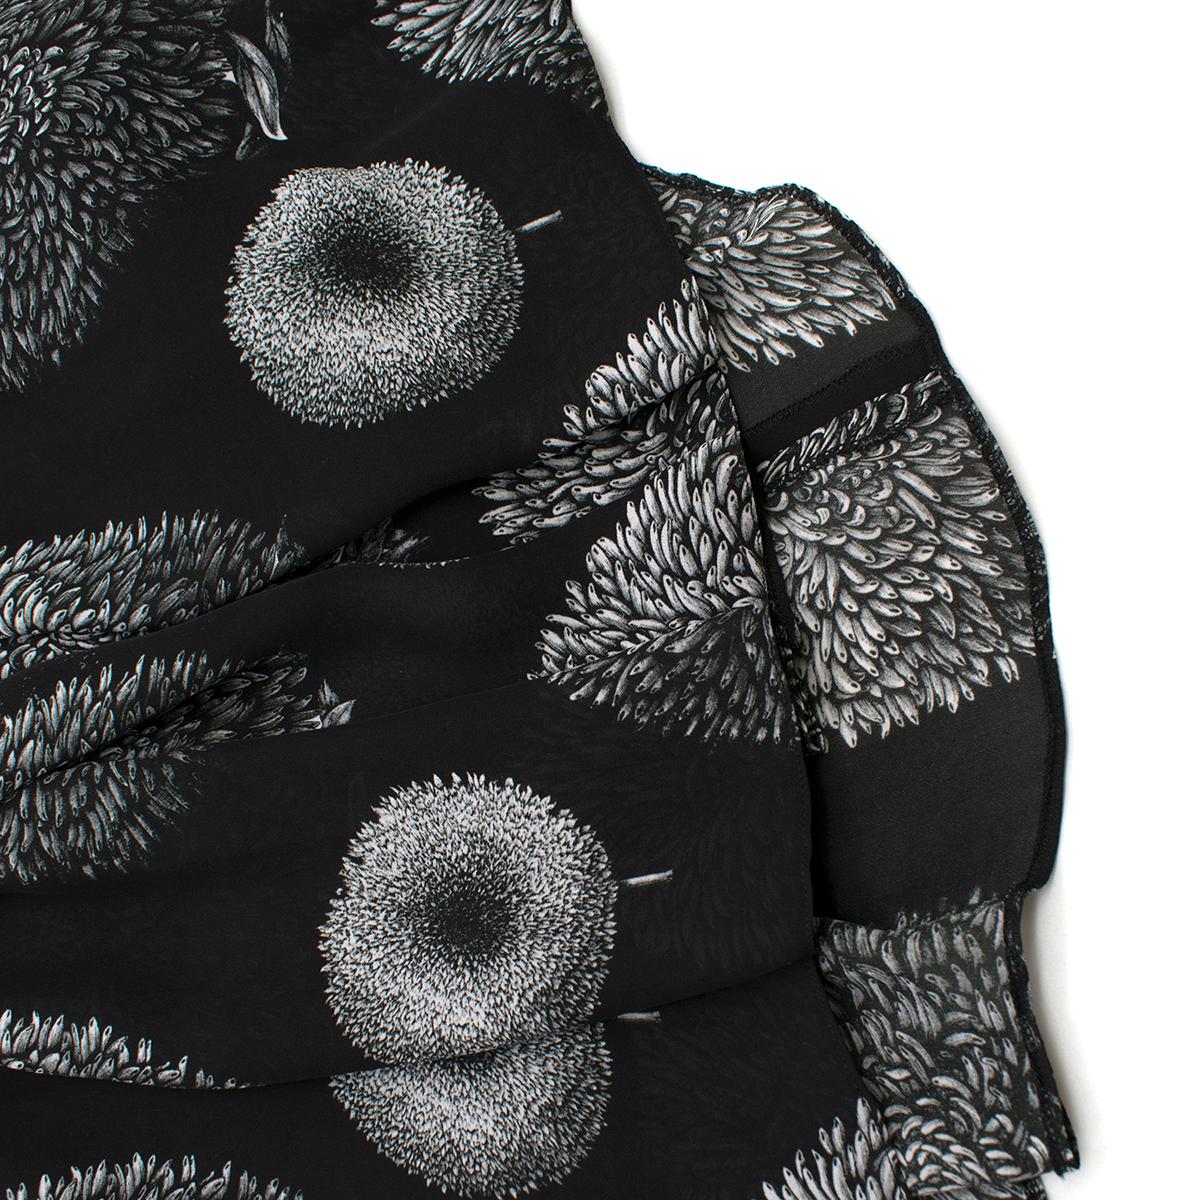 Erdem Black Cold-shoulder Printed Belted Dress - Size US 8 4